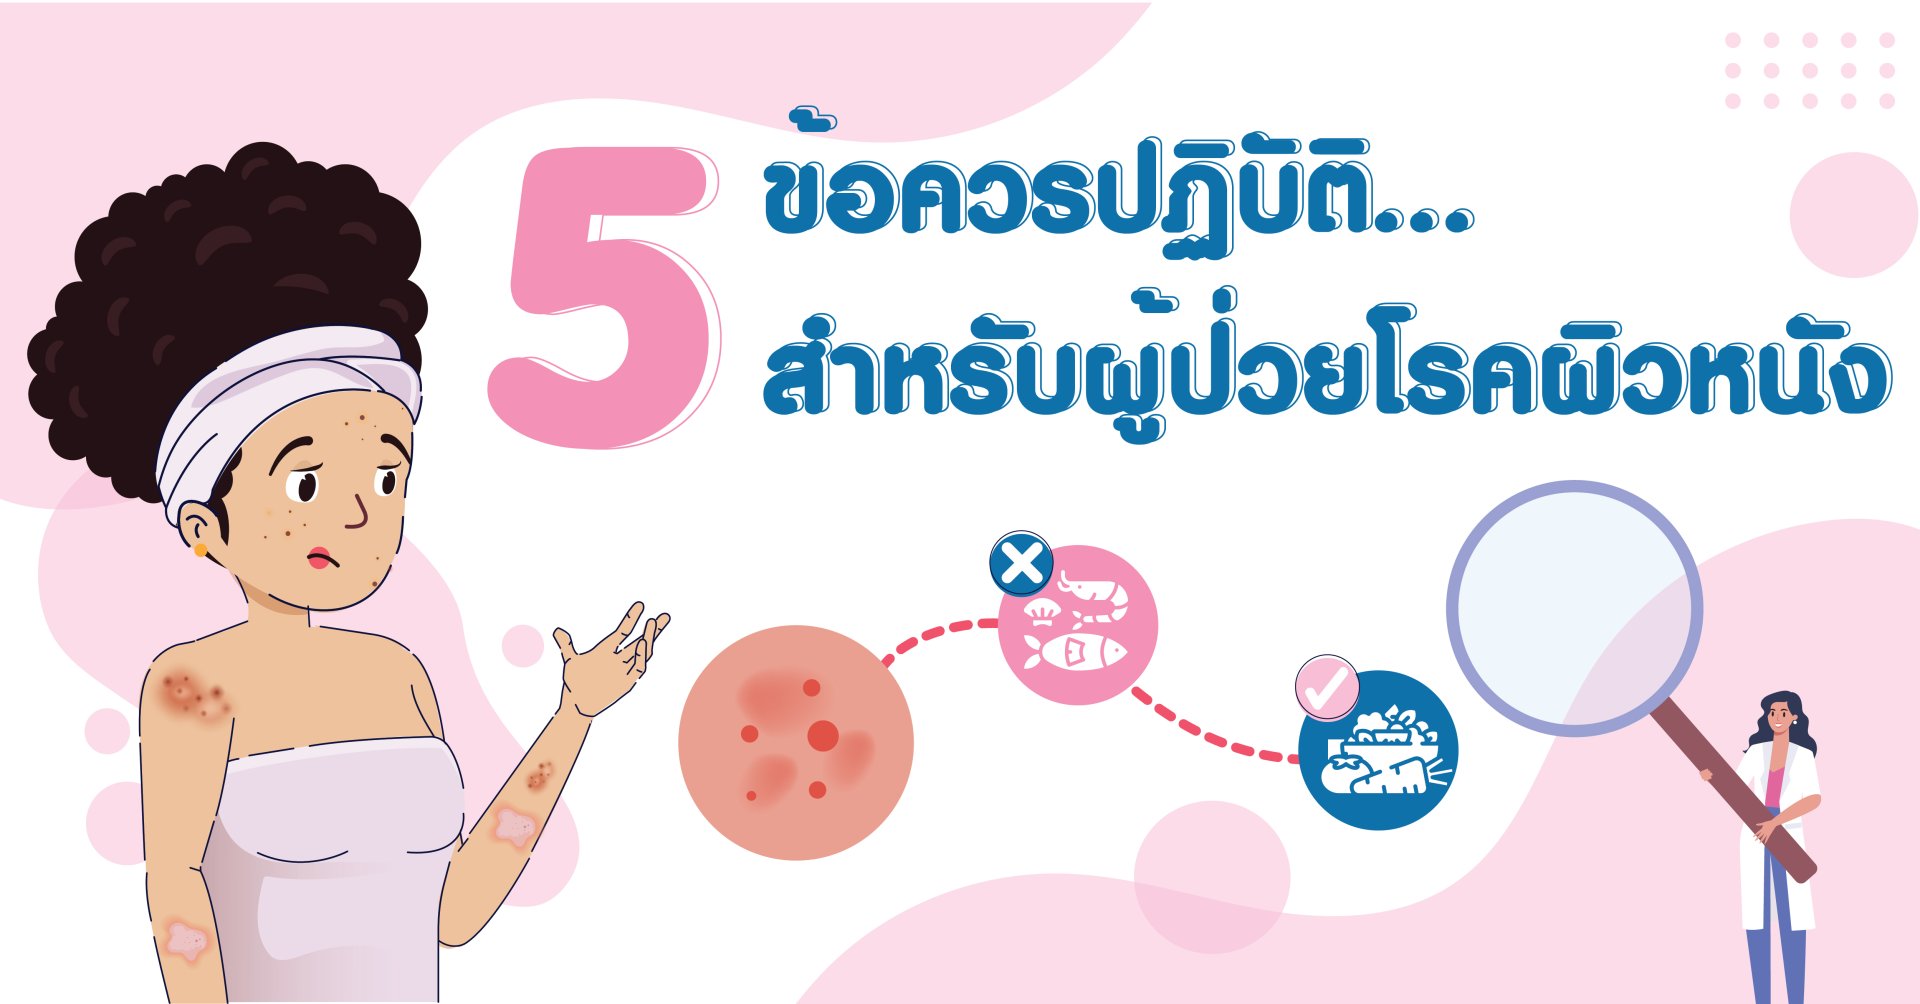 5 ข้อควรปฏิบัติสำหรับผู้ป่วยโรคผิวหนัง  (The caution for dermatologic patients) 